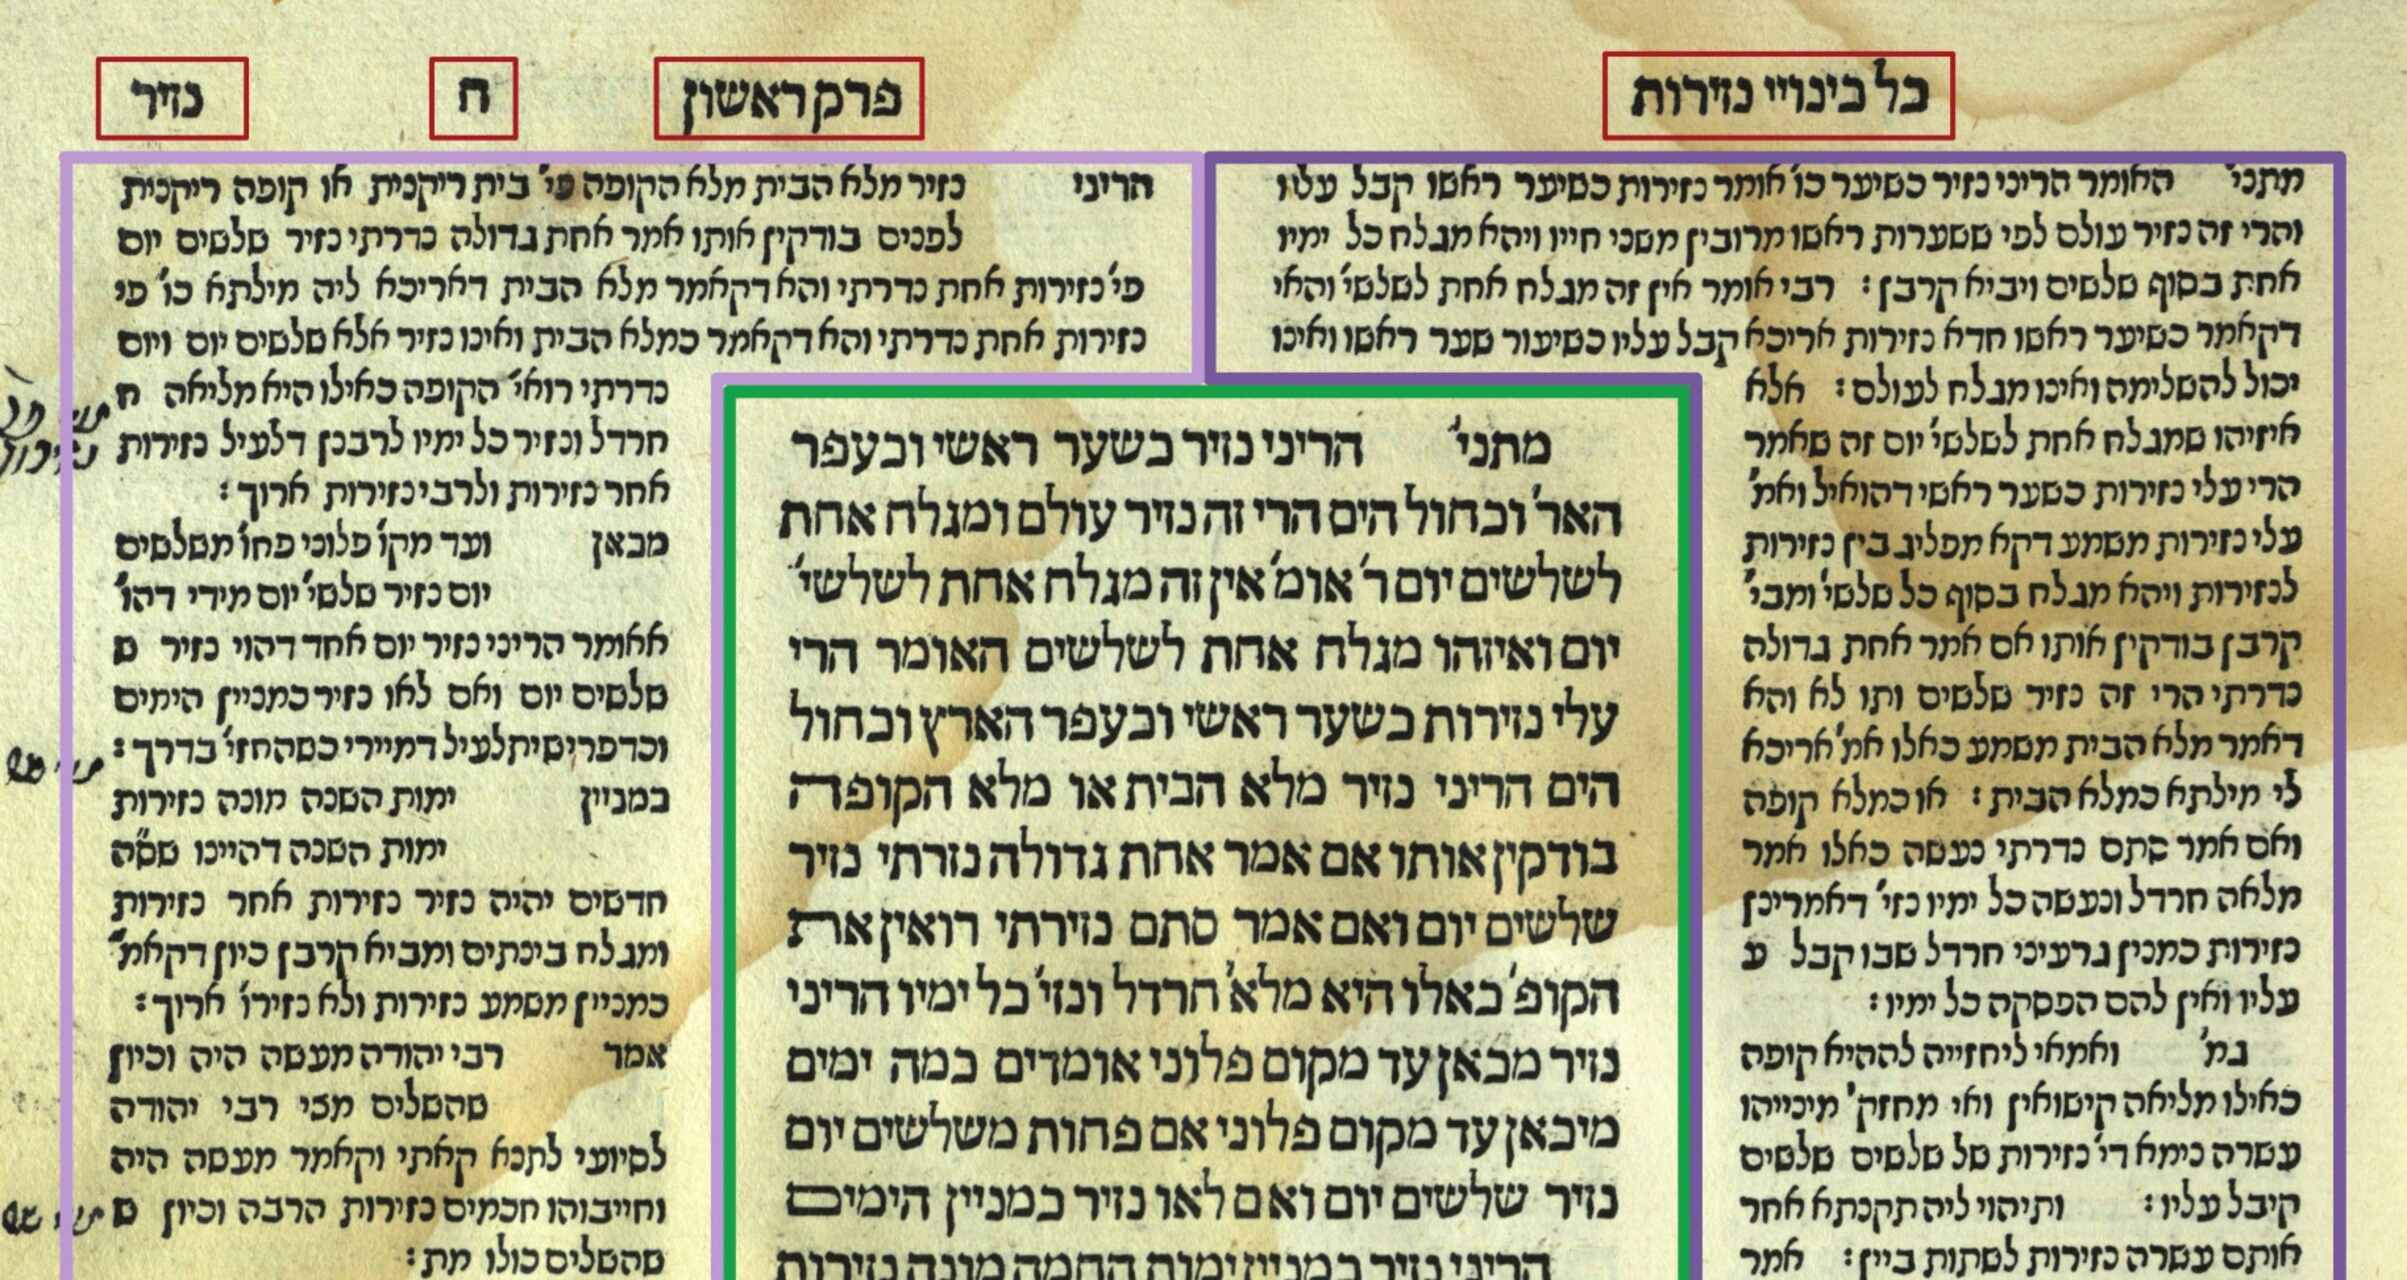 Зображення з єврейського Талмуду з коментарями на полях